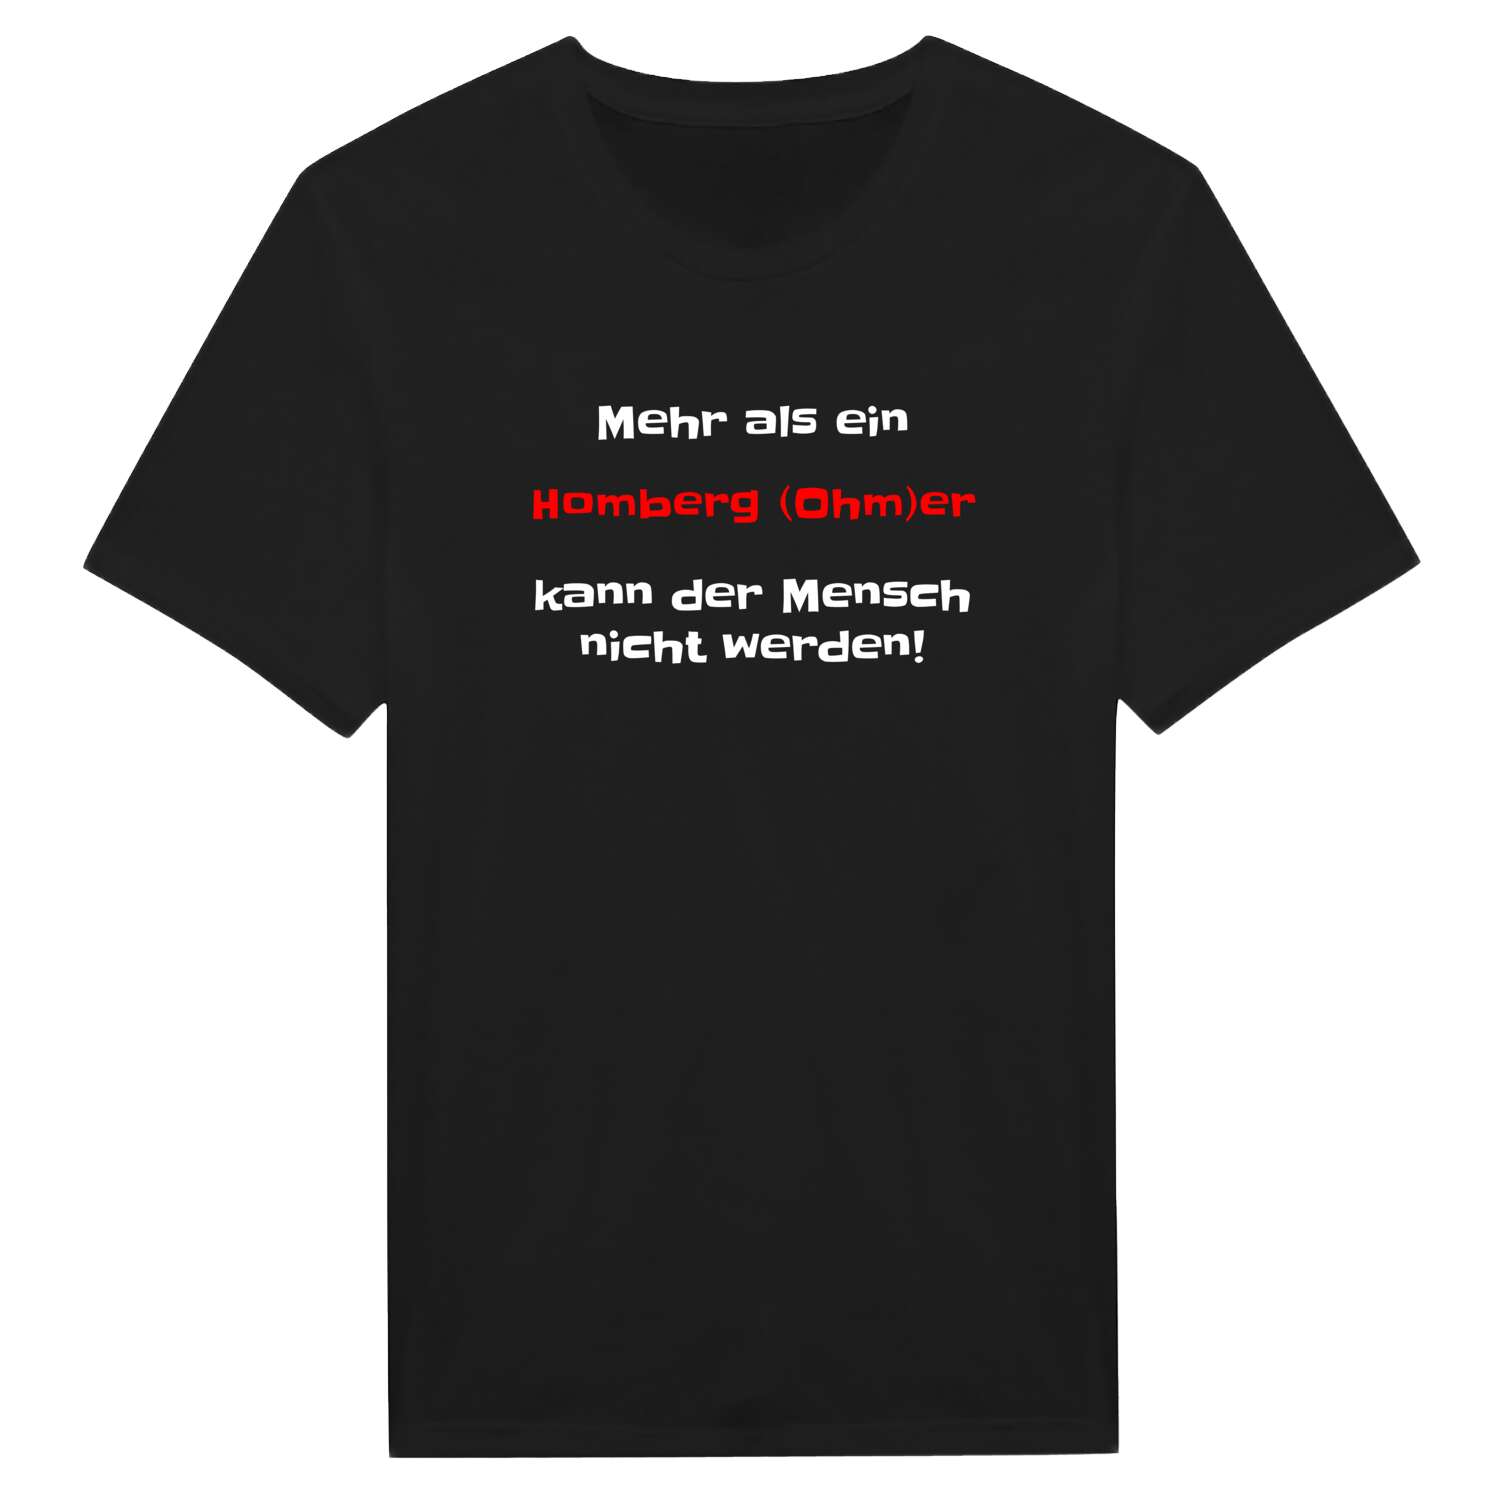 Homberg (Ohm) T-Shirt »Mehr als ein«